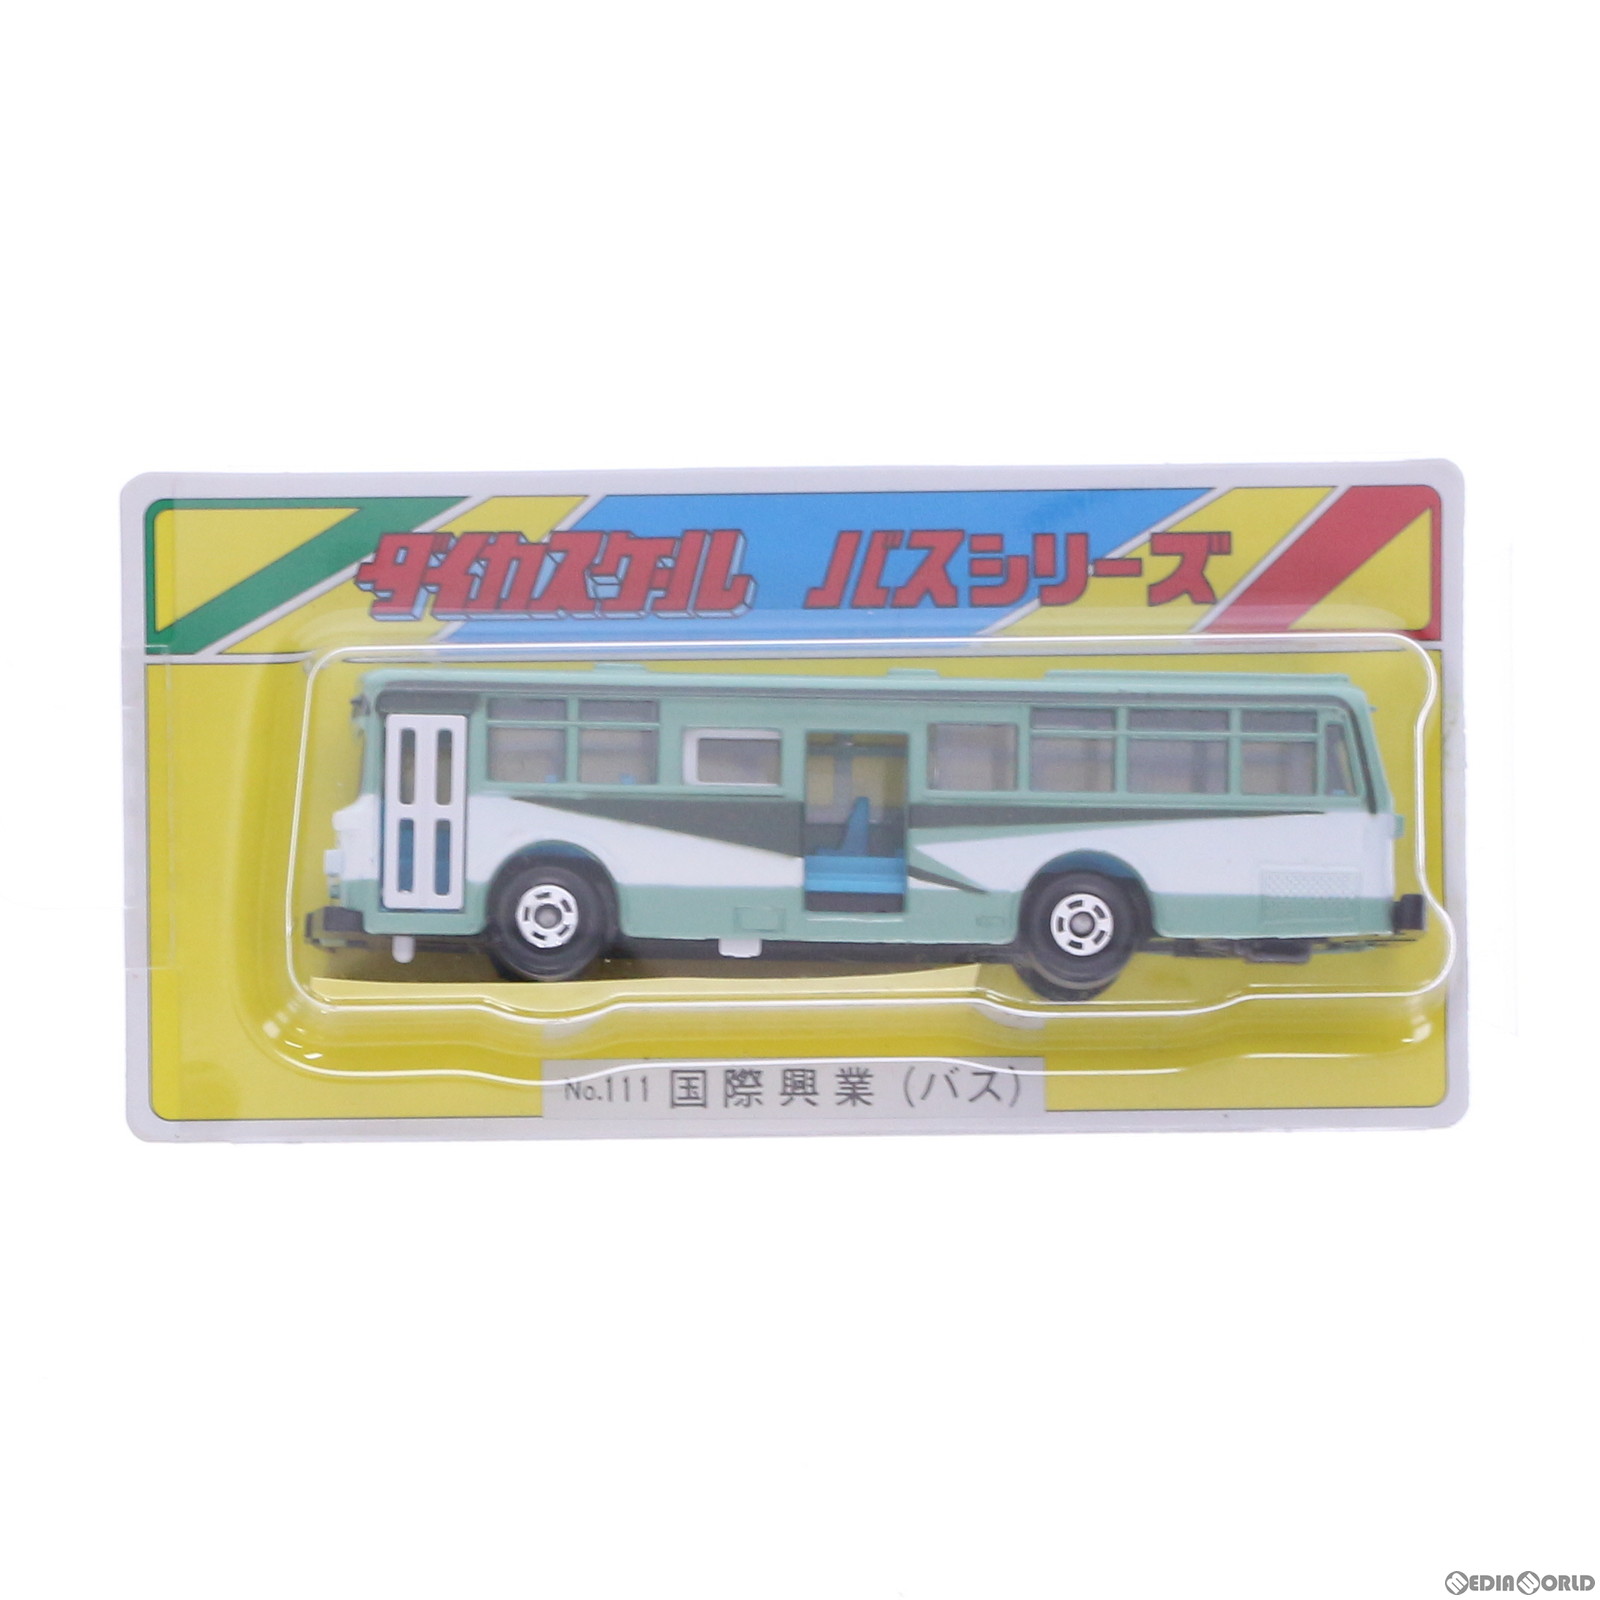 【中古即納】[MDL]ダイカスケール バスシリーズ No.155 北陸鉄道バス(ベージュ×レッド) 完成品 ミニカー ニシキ(19991231)